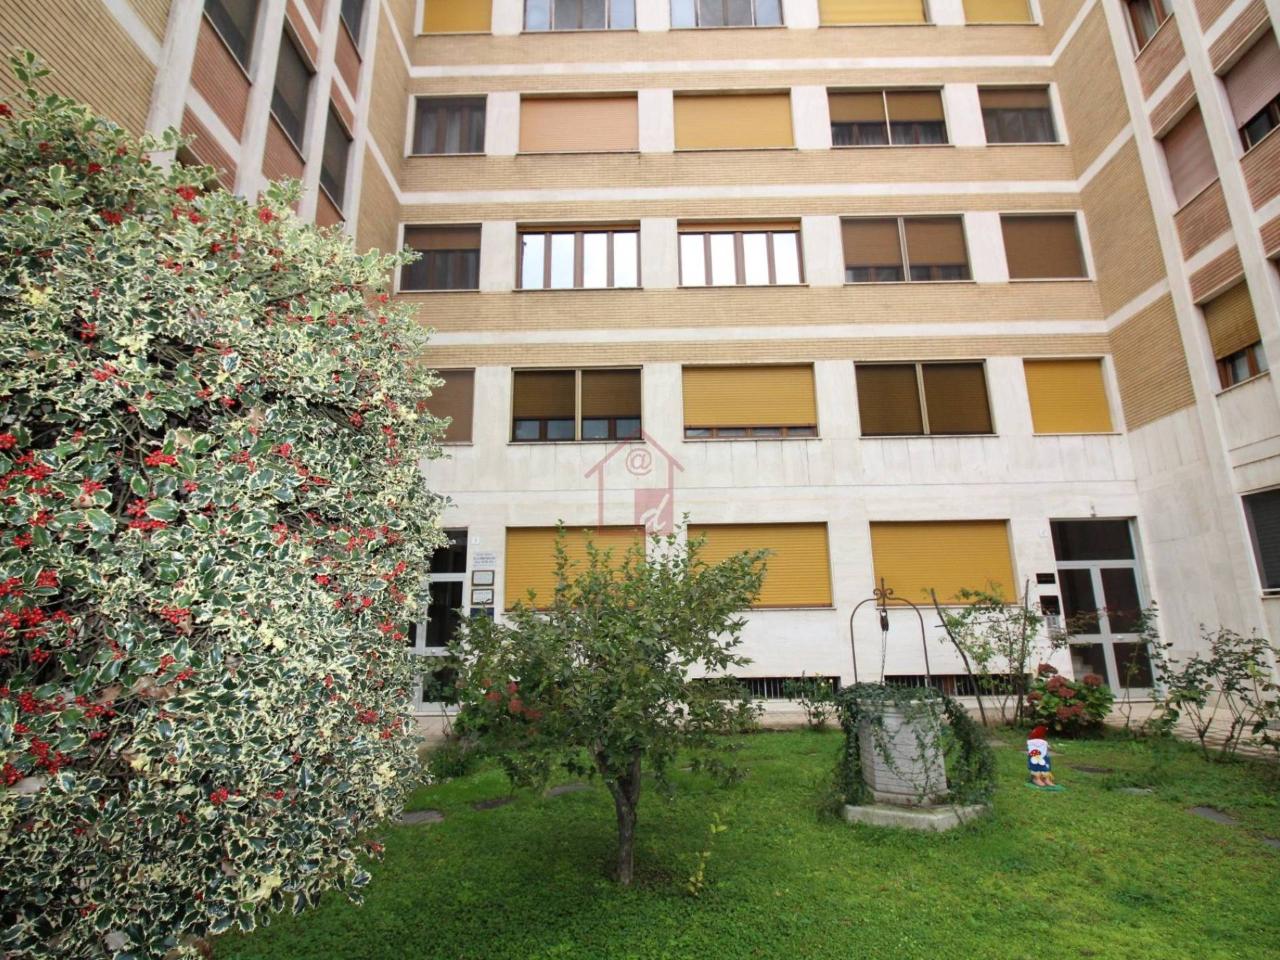 Appartamento in affitto a Vercelli